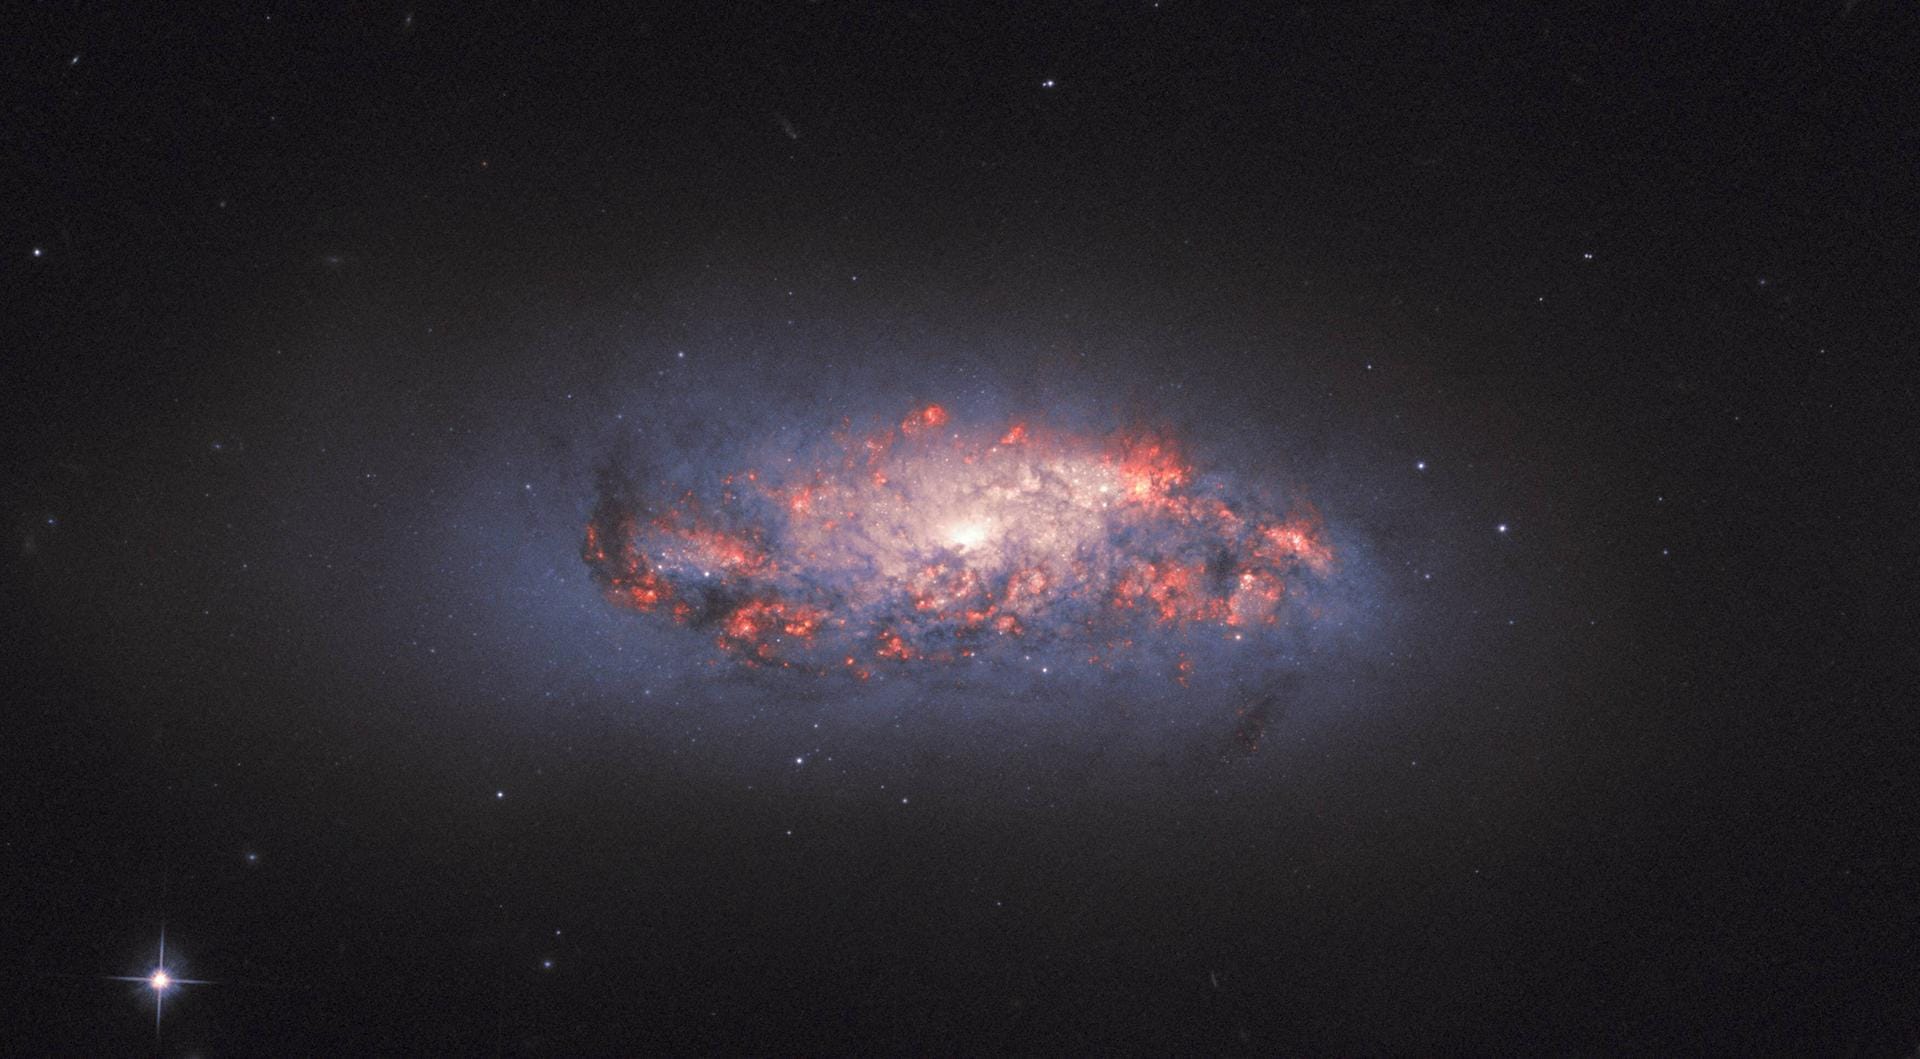 Dieses Bild nahm das Hubble-Teleskop am 1. Juli 2019 auf: Es zeigt eine farbprächtige Sternformation in der Spiralgalaxie NGC 972, die der deutsch-britische Astronom William Herschel bereits 1784 entdeckte.